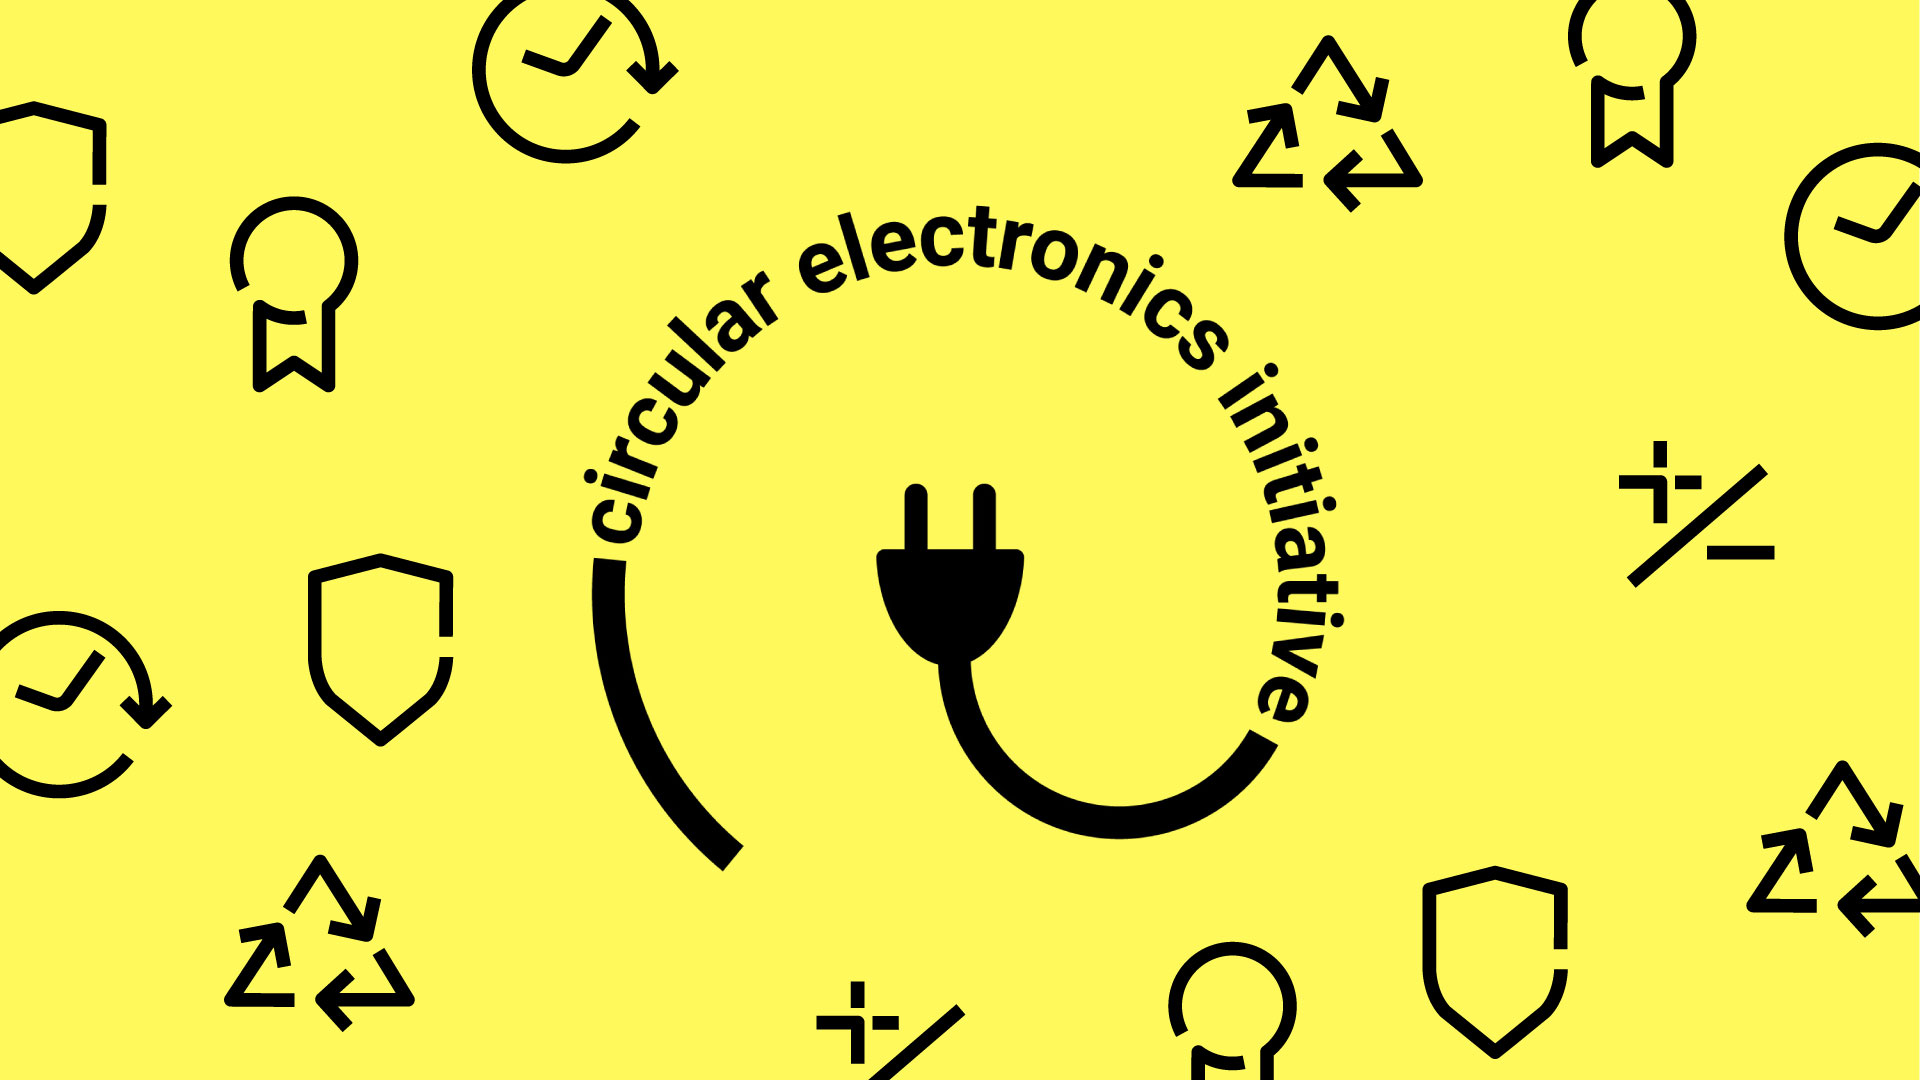 Circular Electronics Initiative